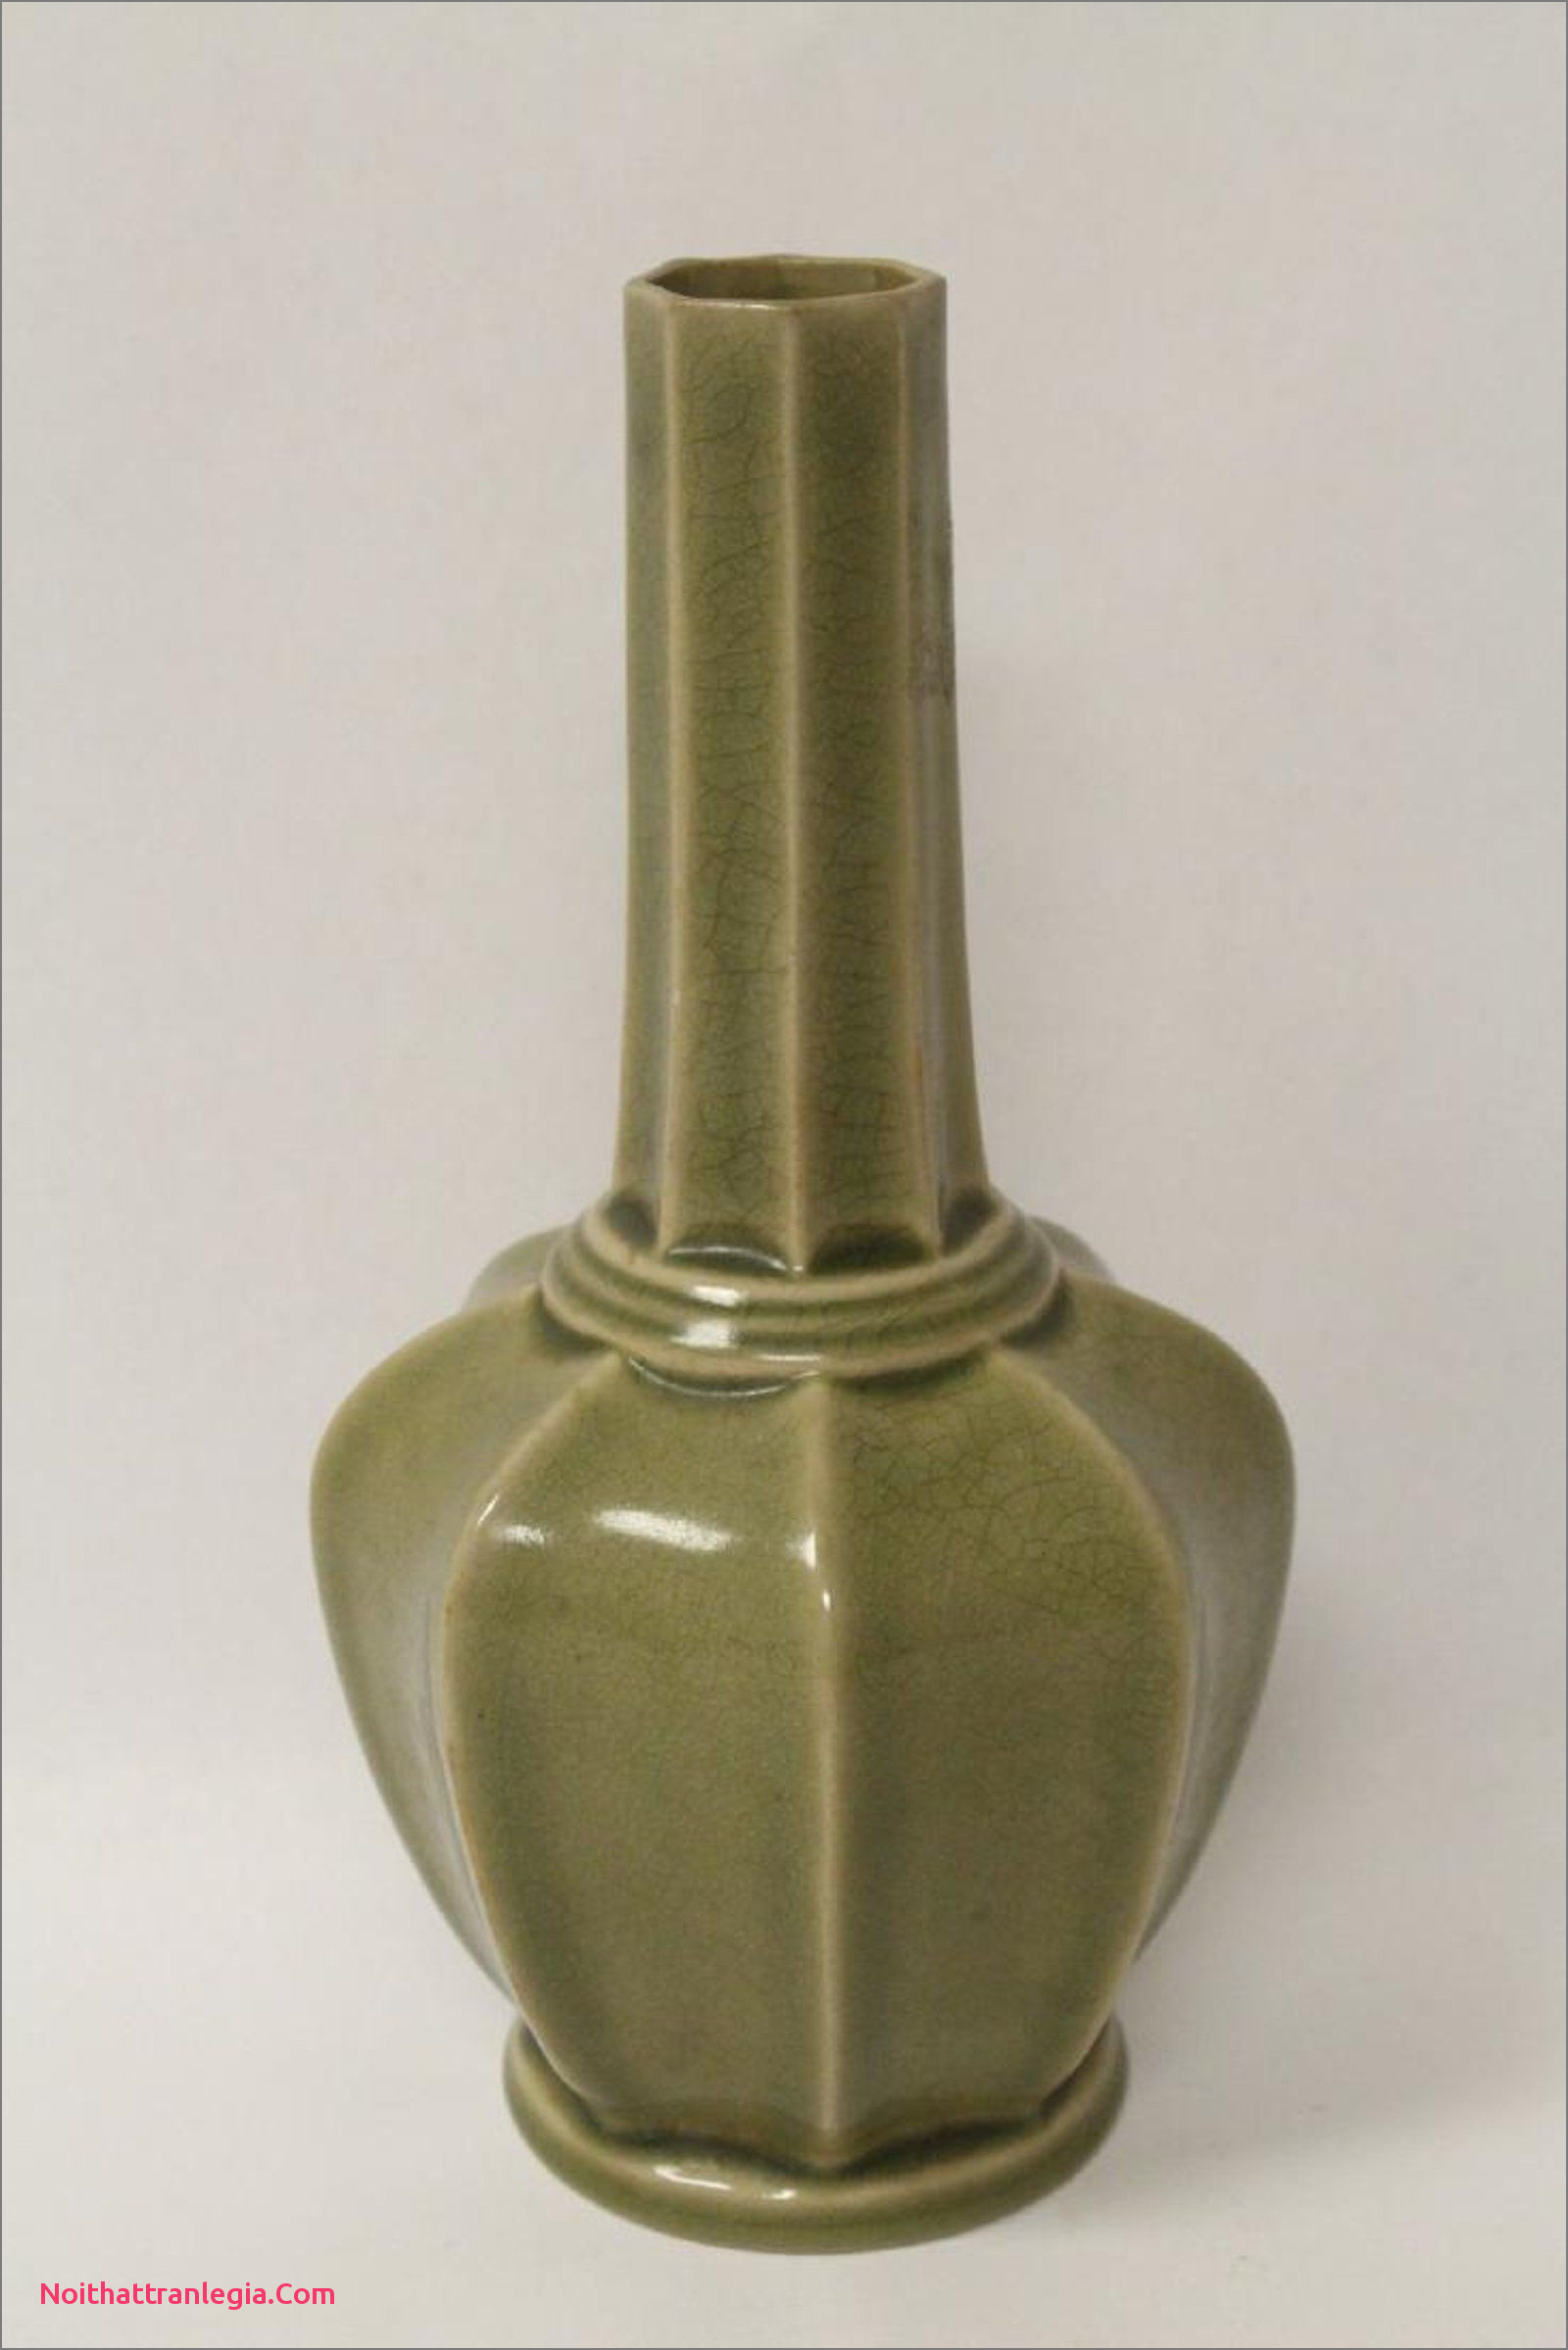 16 Unique Lime Green Ceramic Vase 2024 free download lime green ceramic vase of 20 chinese antique vase noithattranlegia vases design inside chinese song style celadon porcelain vase